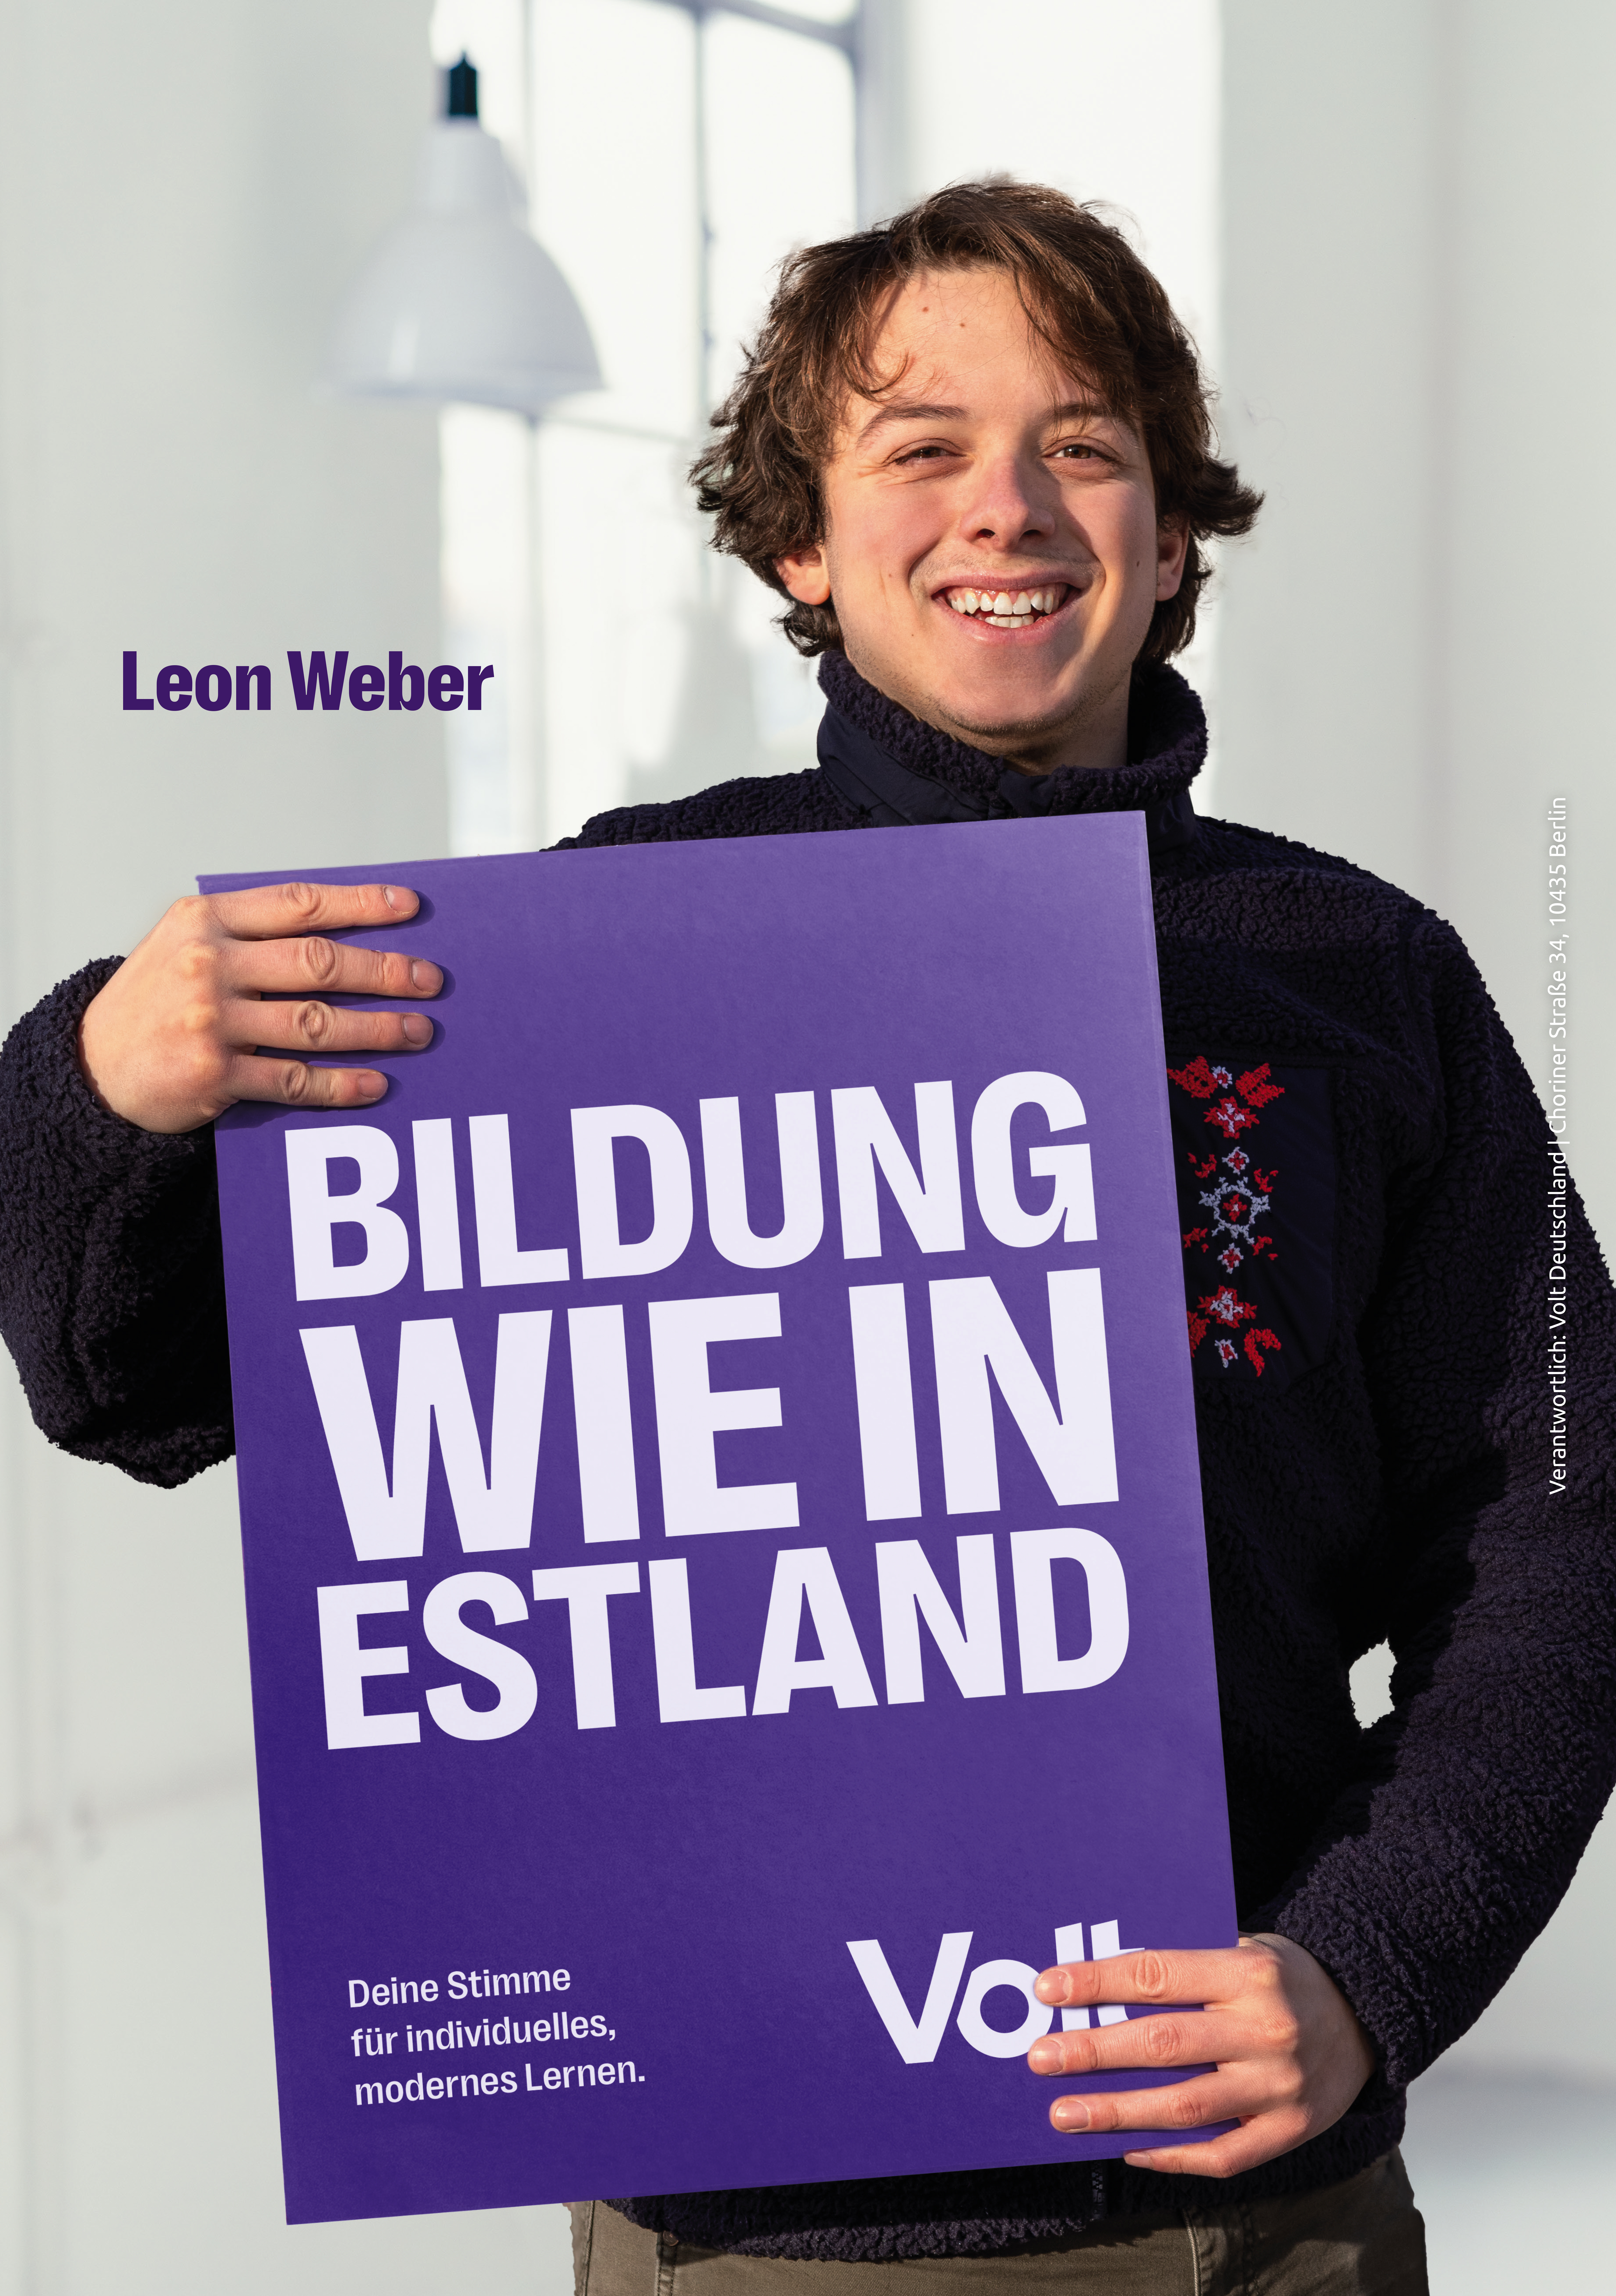 Leon Weber hält ein Plakat mit dem Spruch "Bildung wie in Estland". Als Erklärung steht darunter "Deine Stimme für individuelles, modernes Lernen."